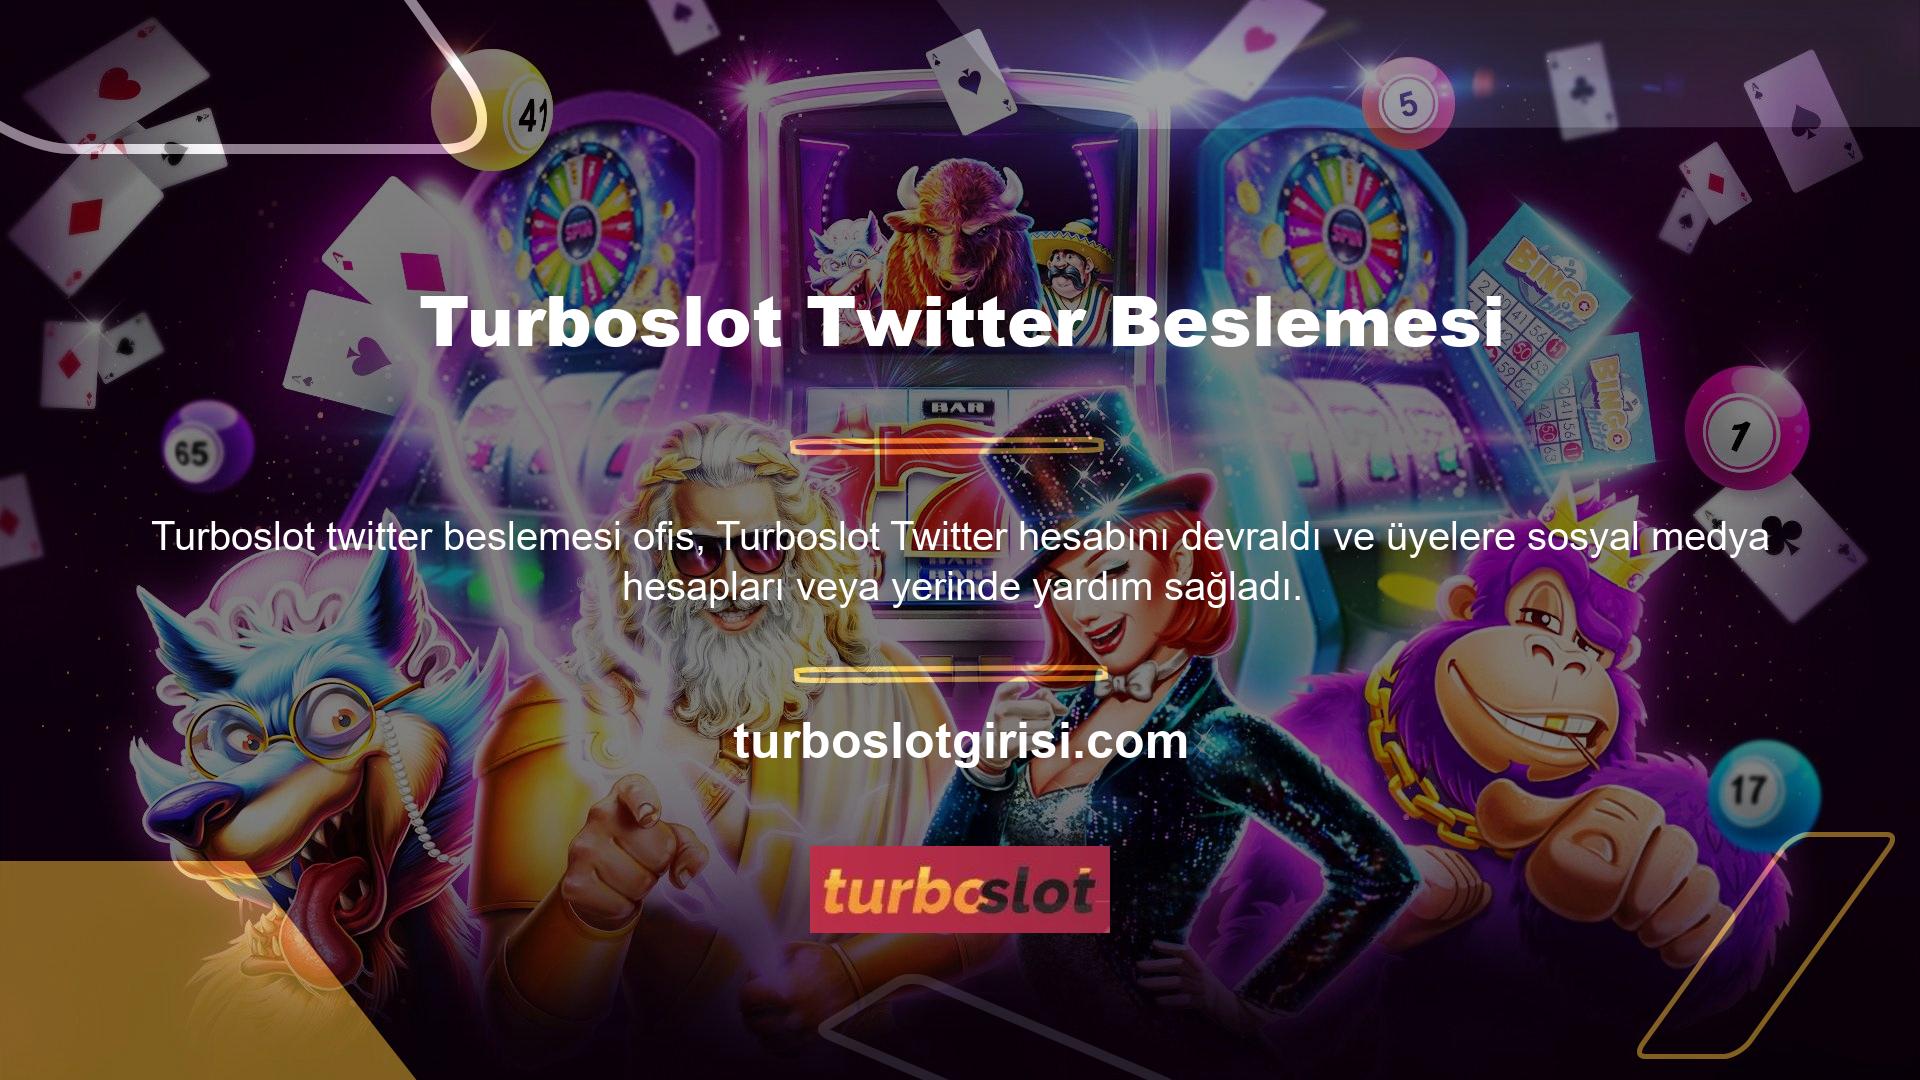 Turboslot canlı bahis, uzun yıllardır Casino meraklılarının ihtiyaçlarına hizmet eden tanınmış bir markadır